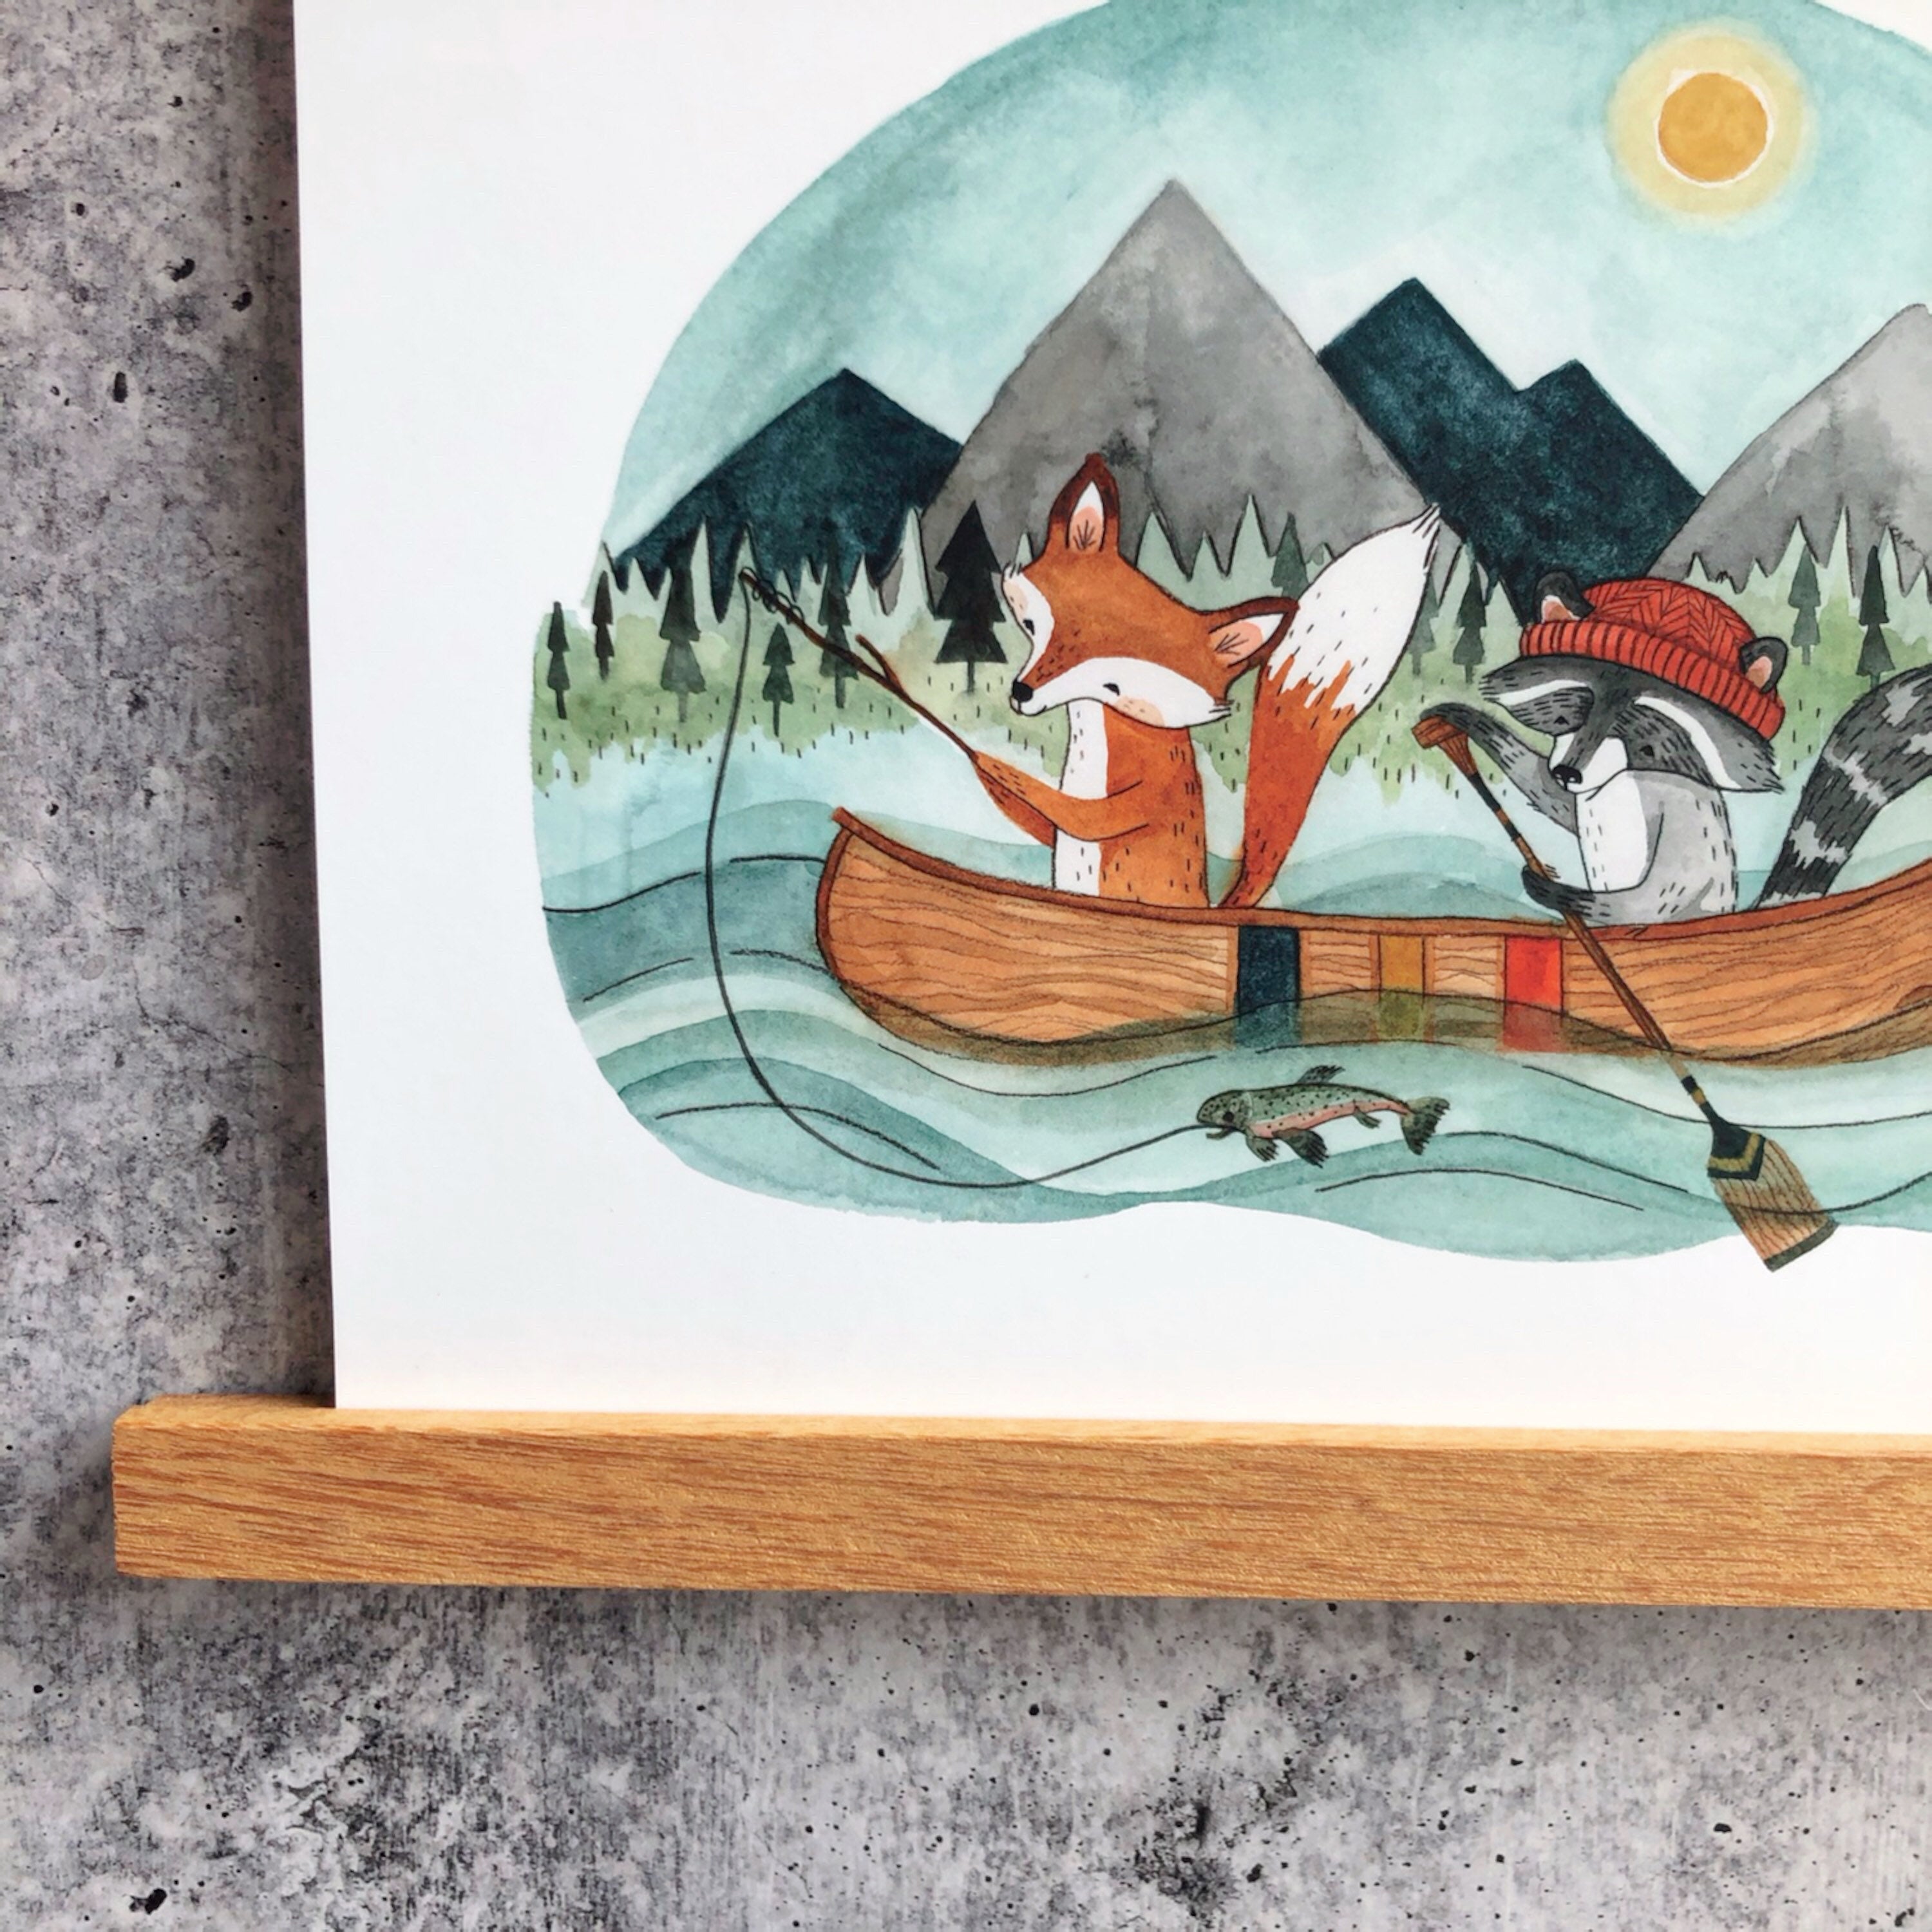 Canoe Adventure Print